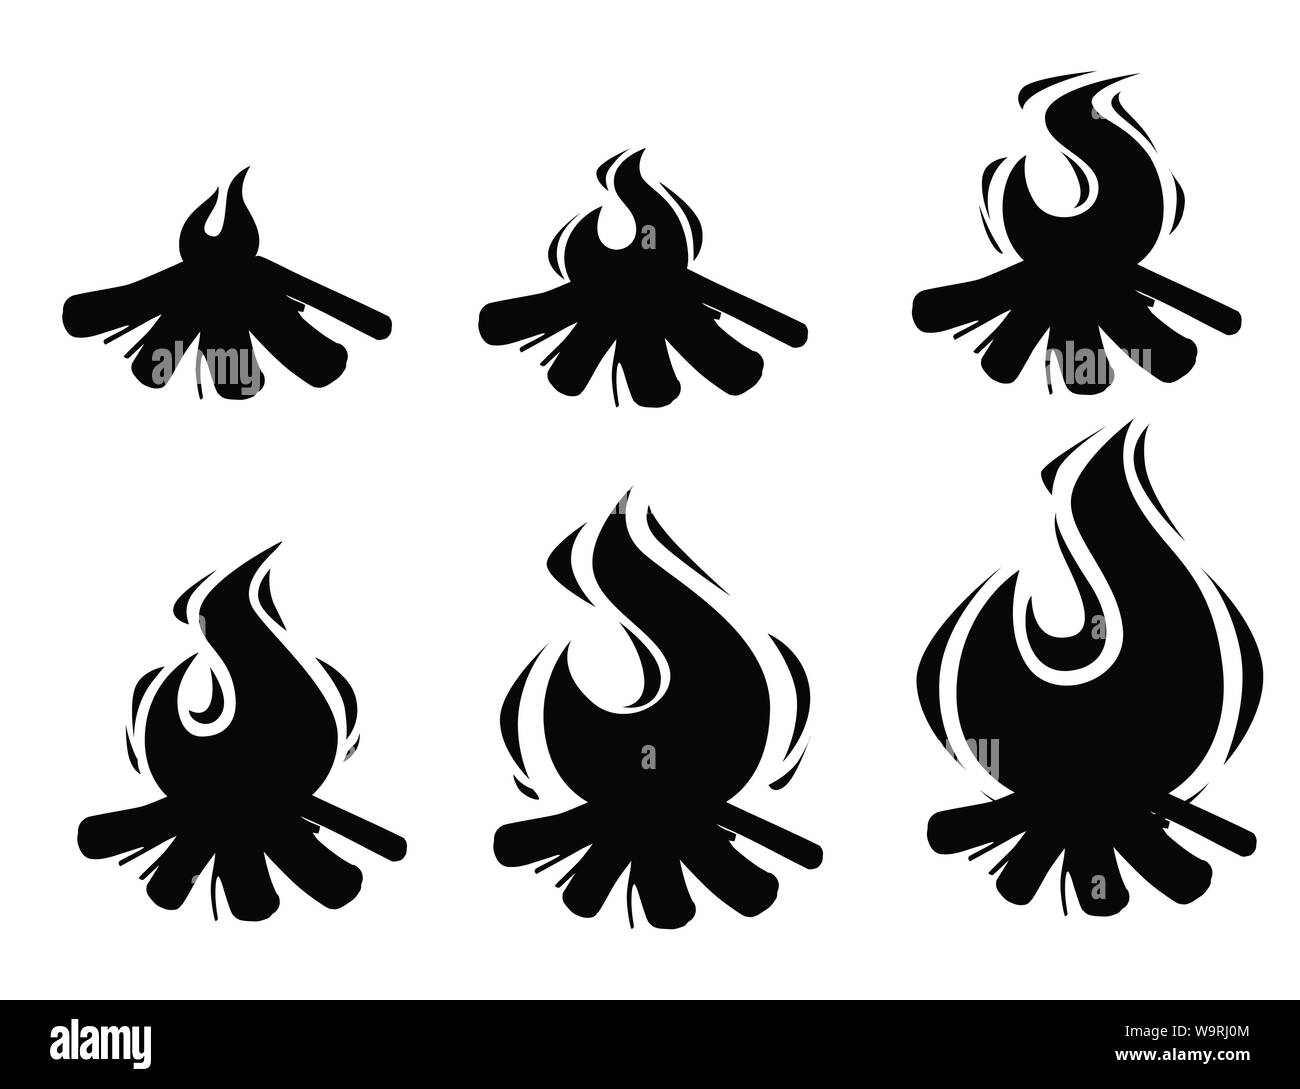 Schwarze Silhouette von Lagerfeuer sprites brennenden Baumstämmen und Camping Steine flachbild Vector Illustration auf weißem Hintergrund Stock Vektor